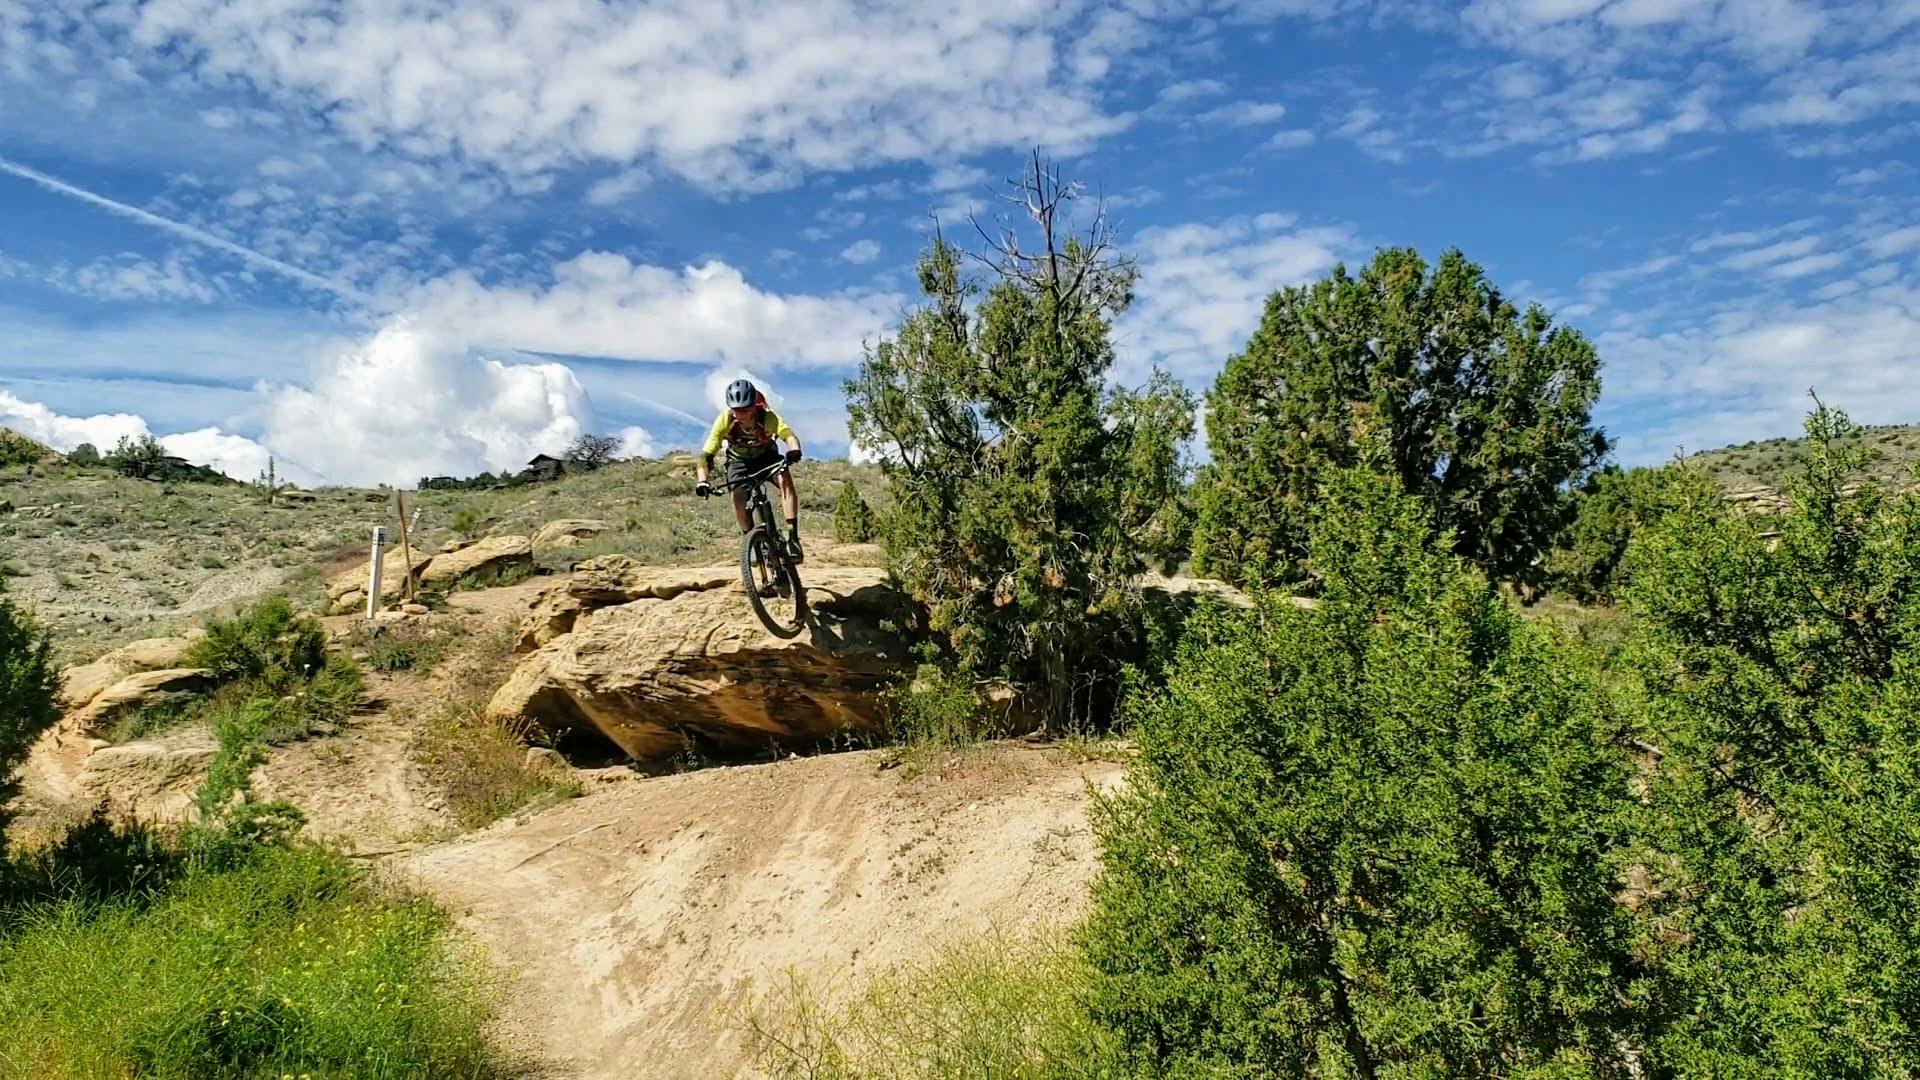 A mountain biker going off a rocky boulder